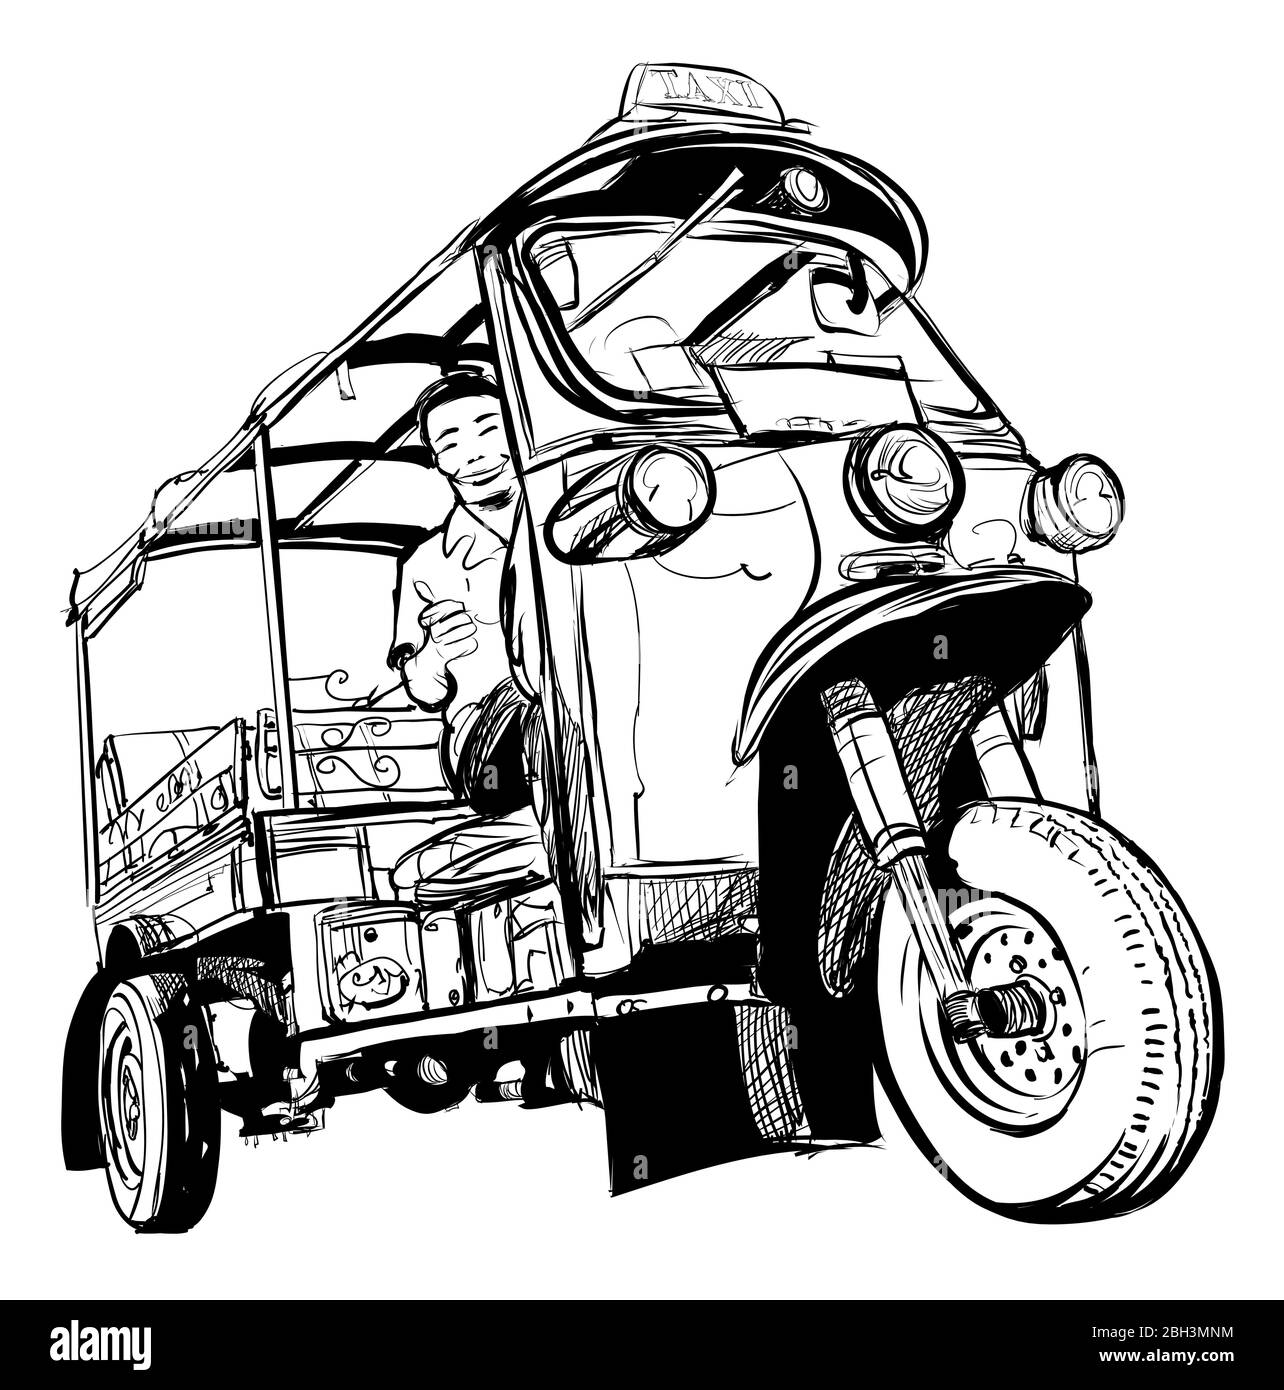 Tuktuk in Thailand - Vektorgrafik (ideal zum Bedrucken von Stoff oder Papier, Poster oder Tapete, Hausdekoration) Stock Vektor